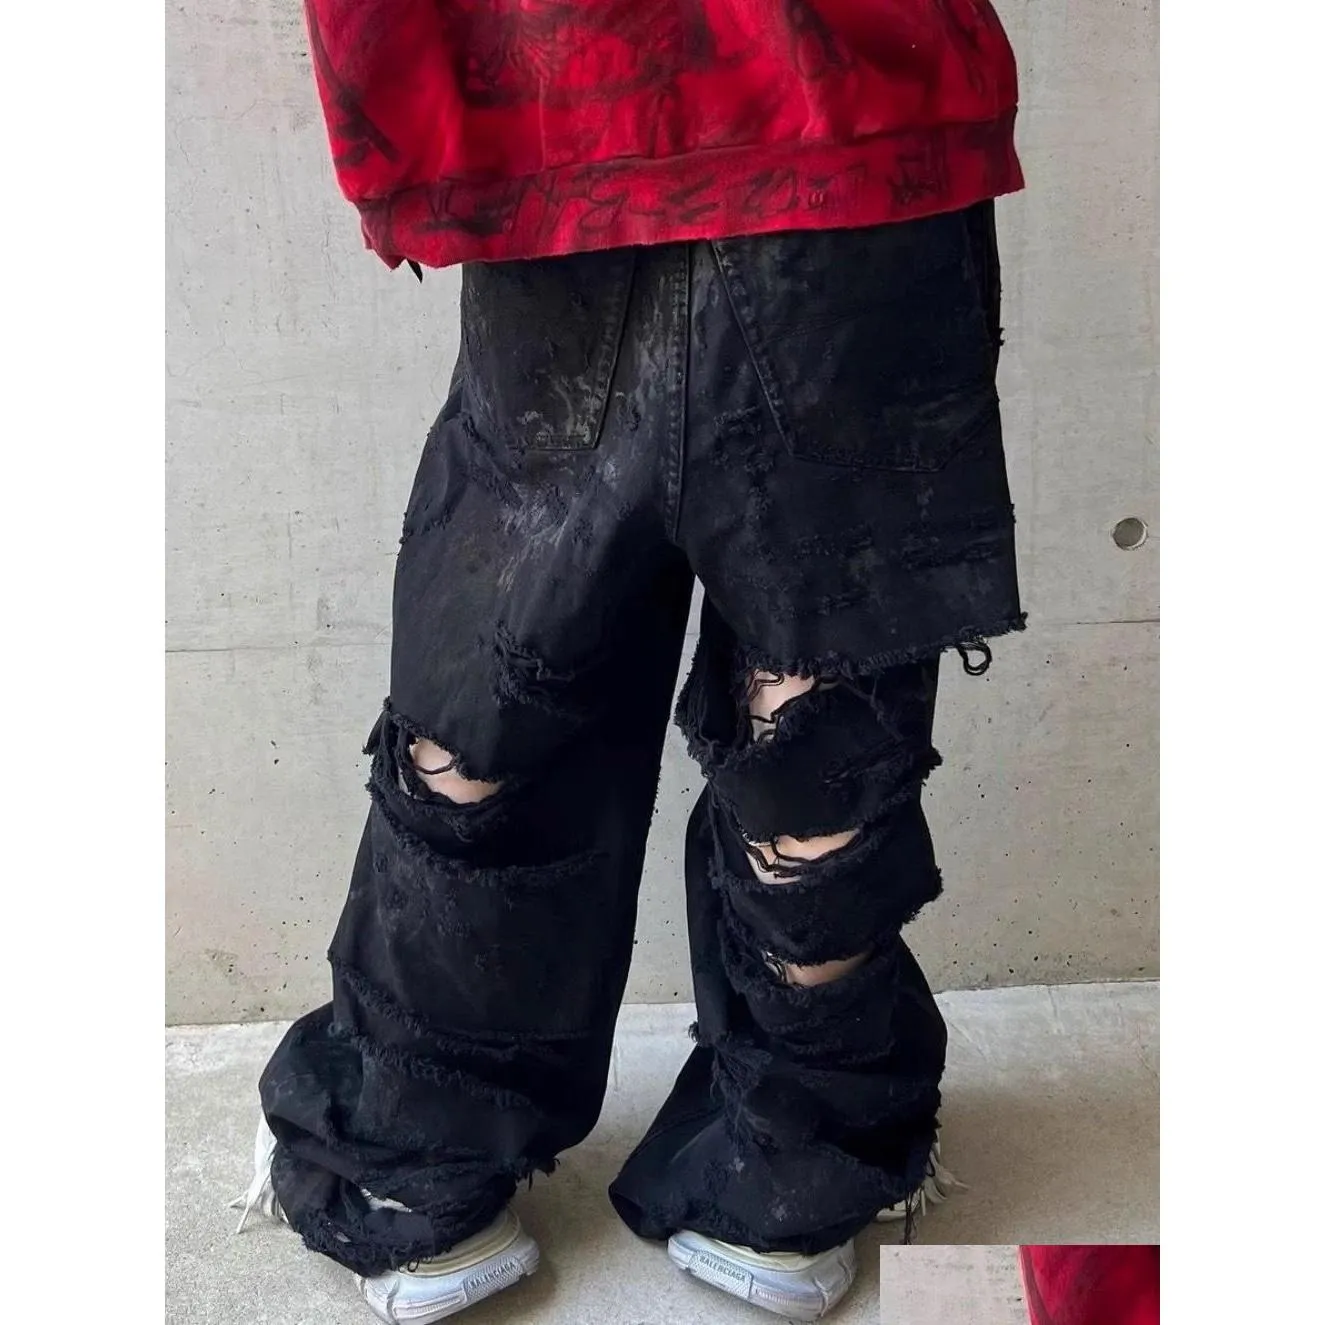 Heren jeans originele baal gewassen los geverfde gescheurde vuile iti gaten stierven high street casual mannen hiphop drop levering kleding kleding dh86c